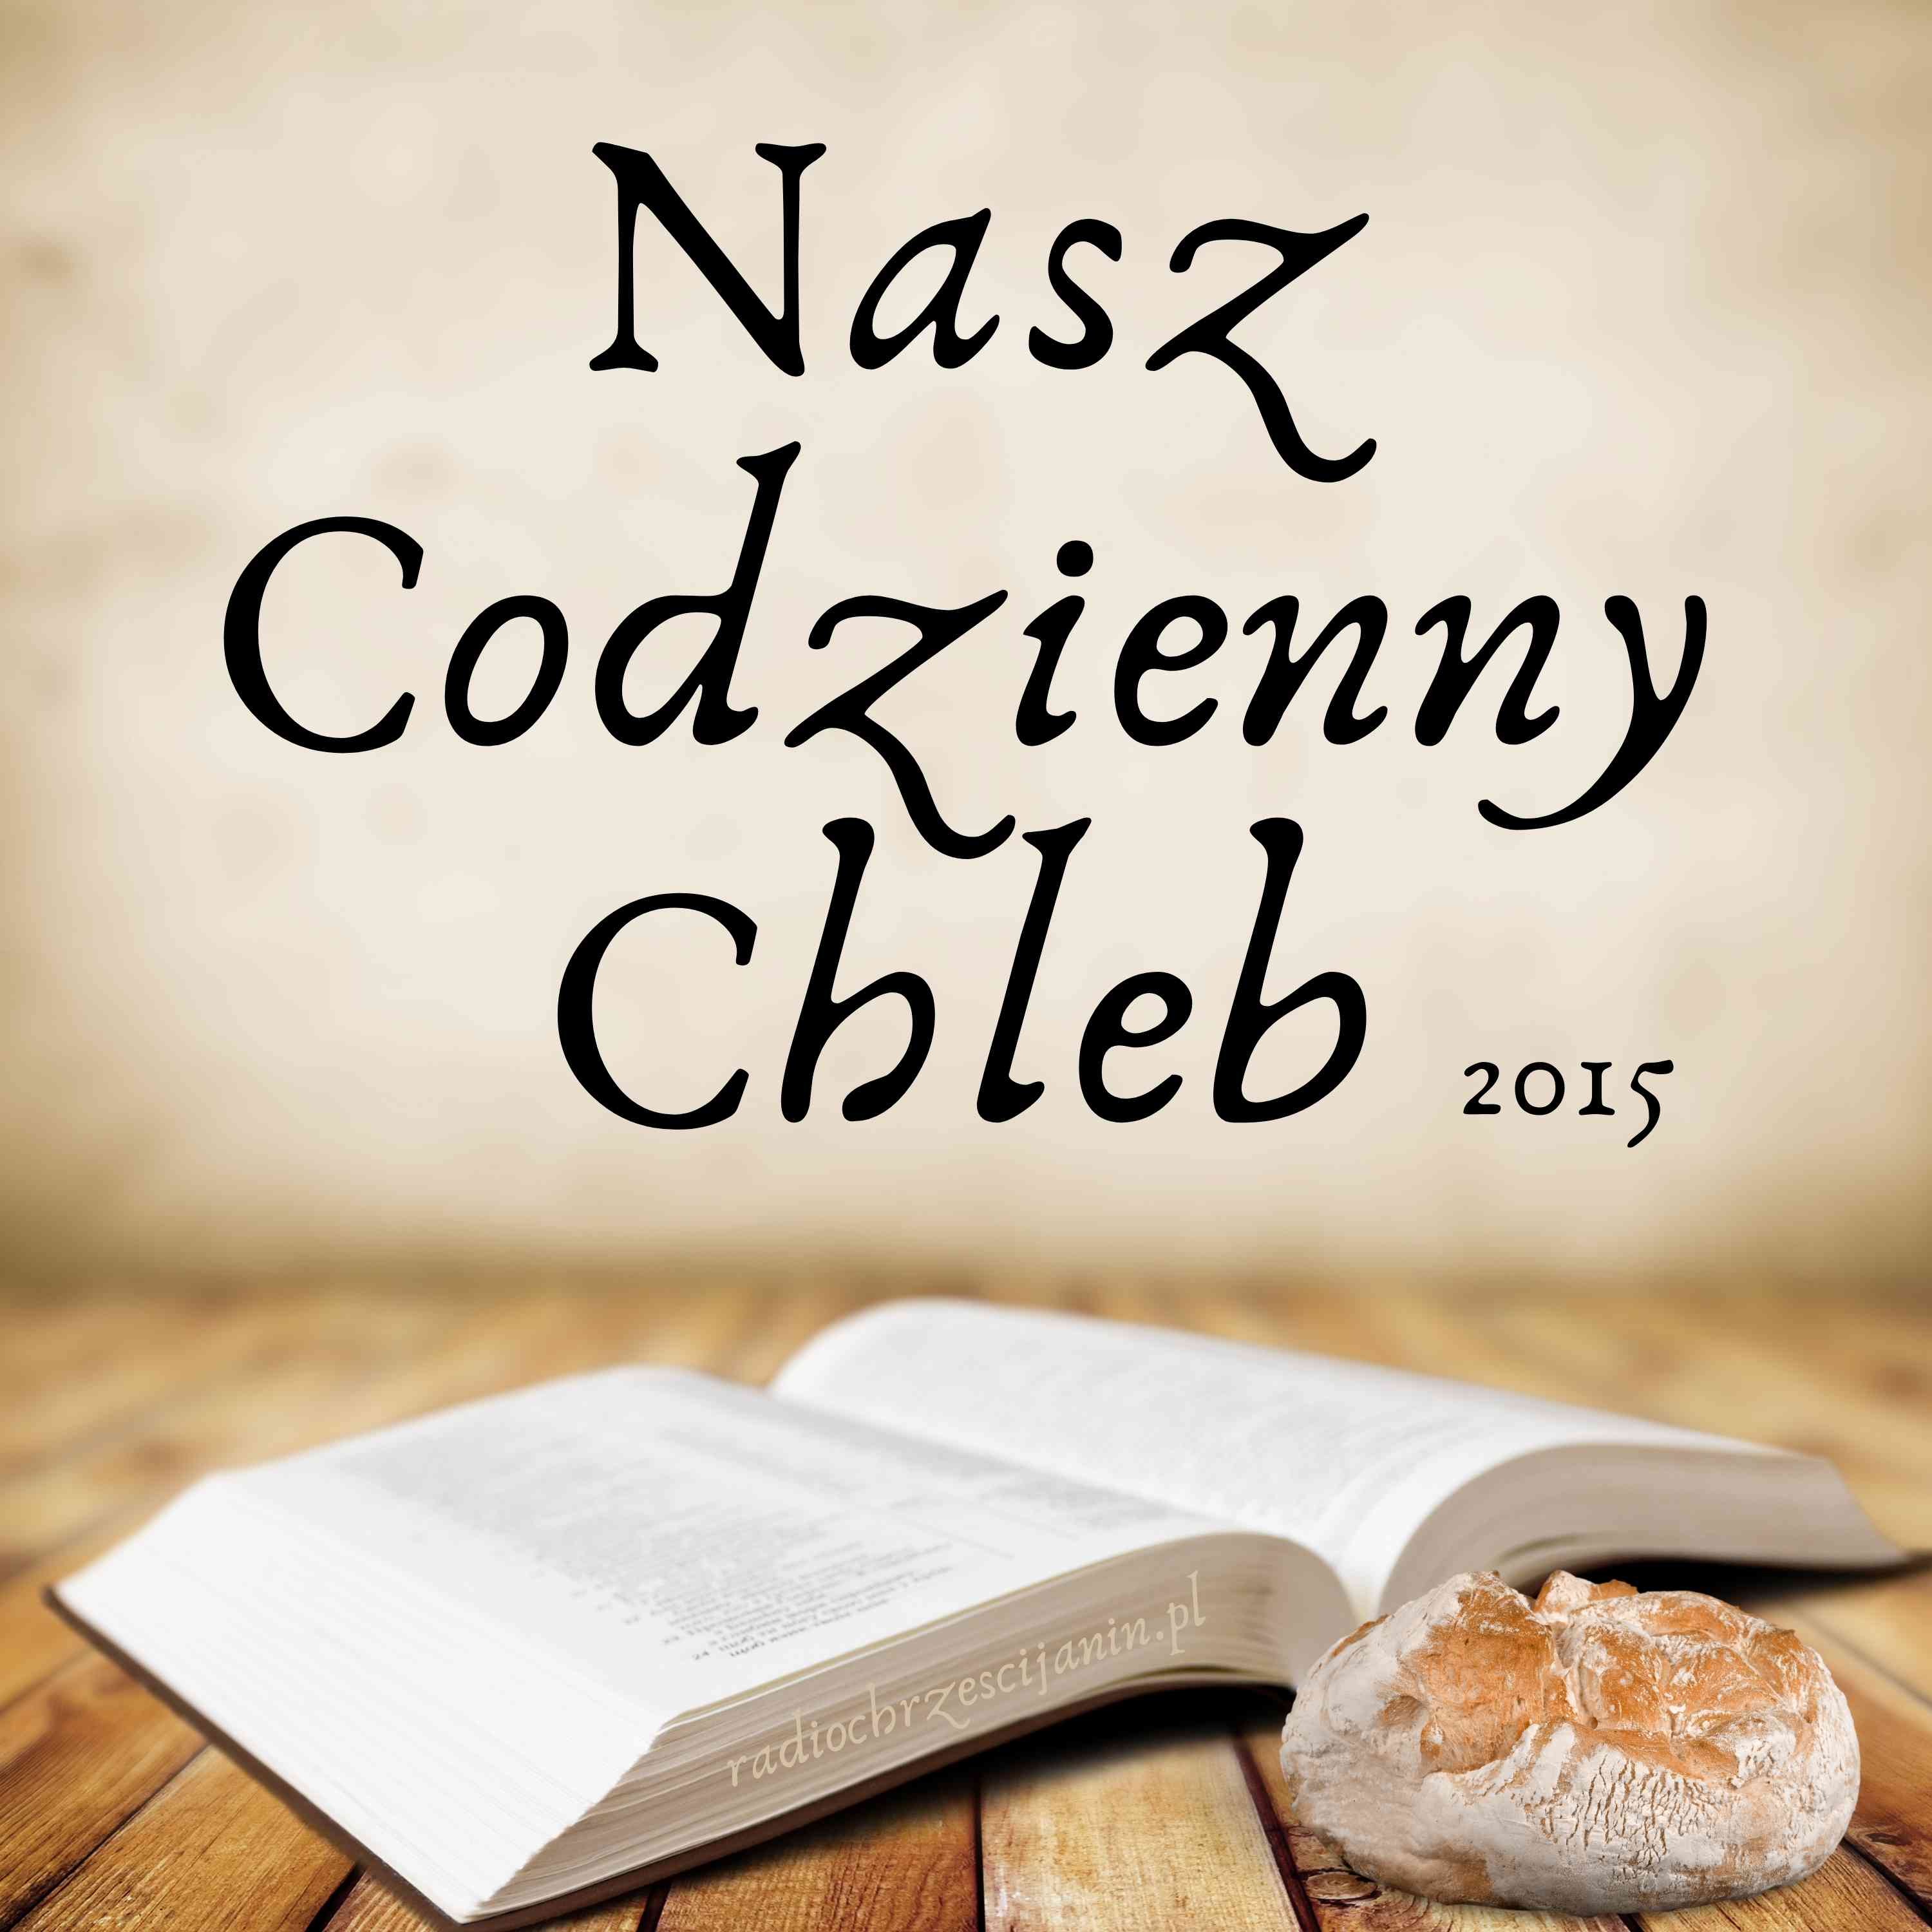 Podcast Nasz Codzienny Chleb 2015